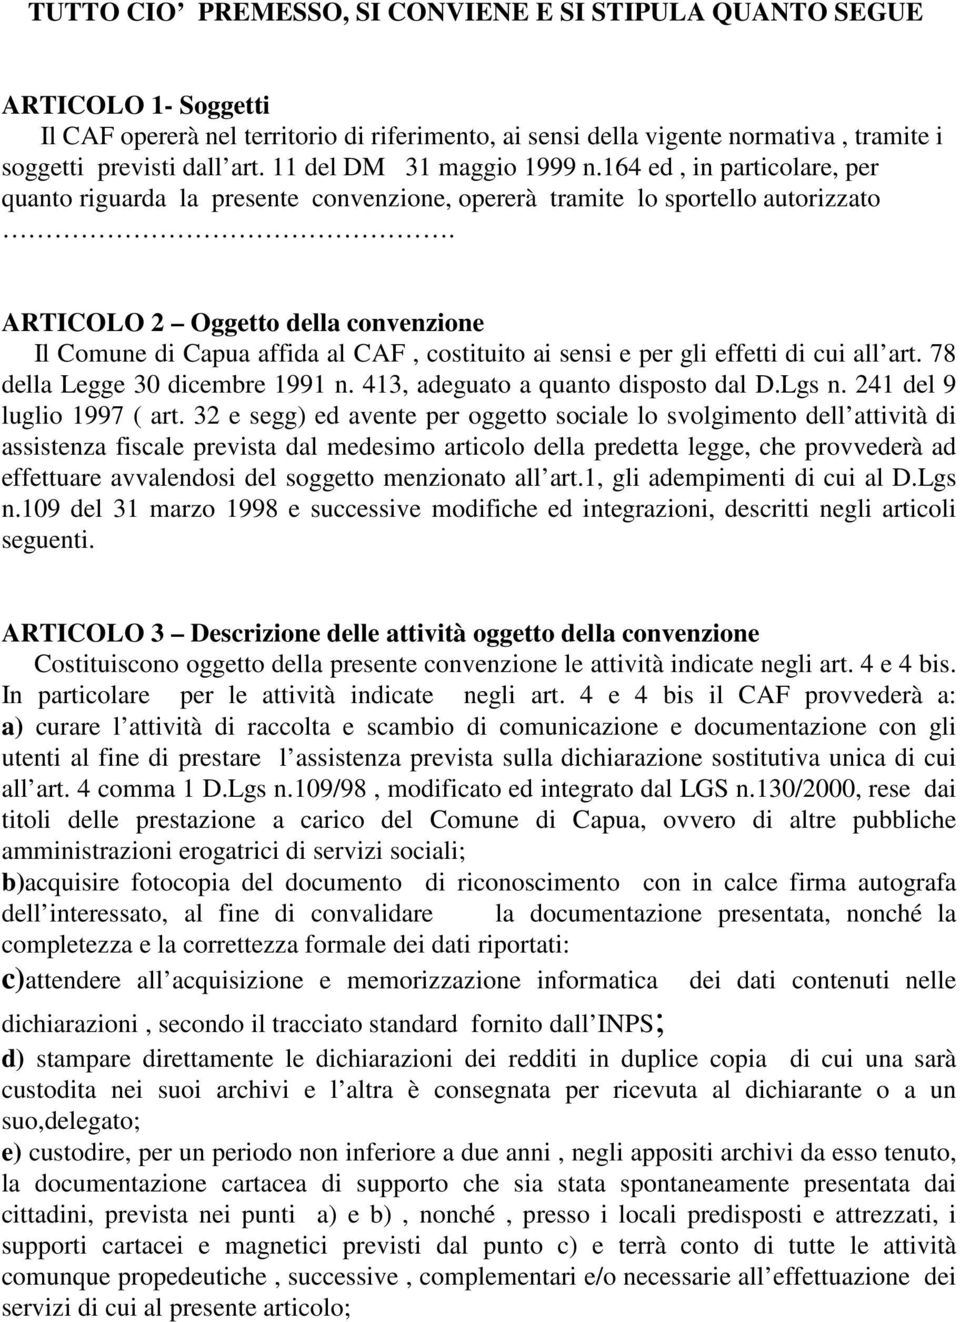 ARTICOLO 2 Oggetto della convenzione Il Comune di Capua affida al CAF, costituito ai sensi e per gli effetti di cui all art. 78 della Legge 30 dicembre 1991 n. 413, adeguato a quanto disposto dal D.